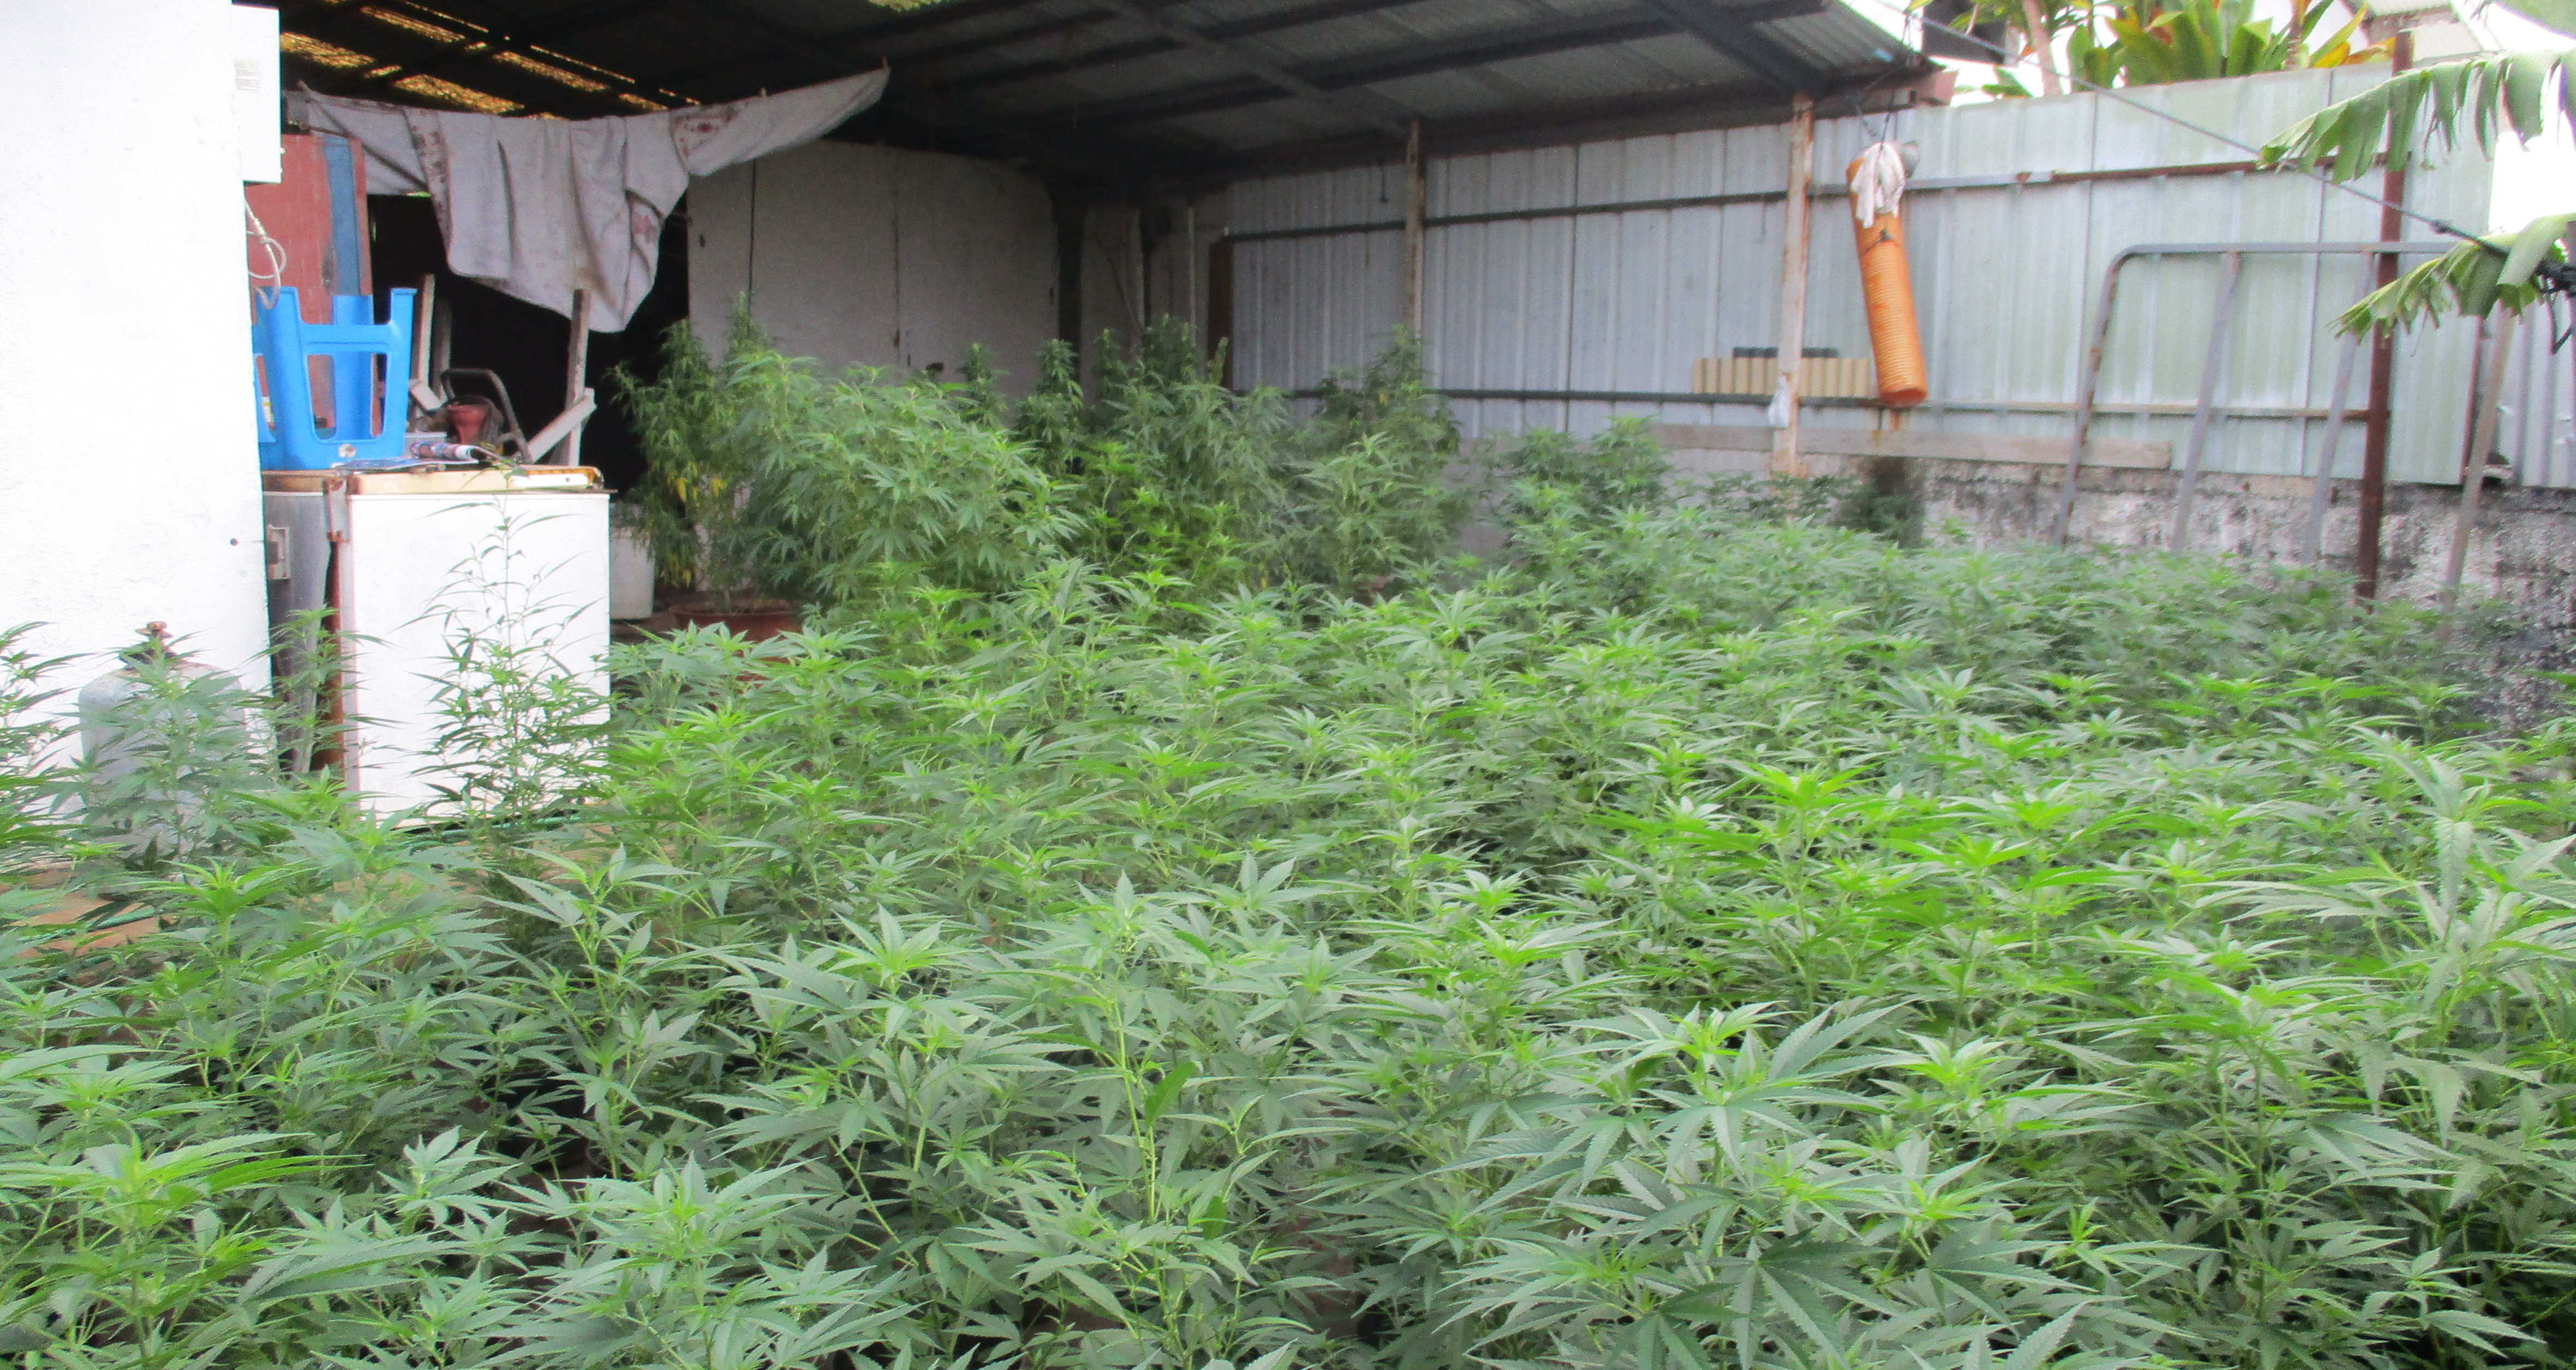 406 plants de cannabis découverts à Punaauia